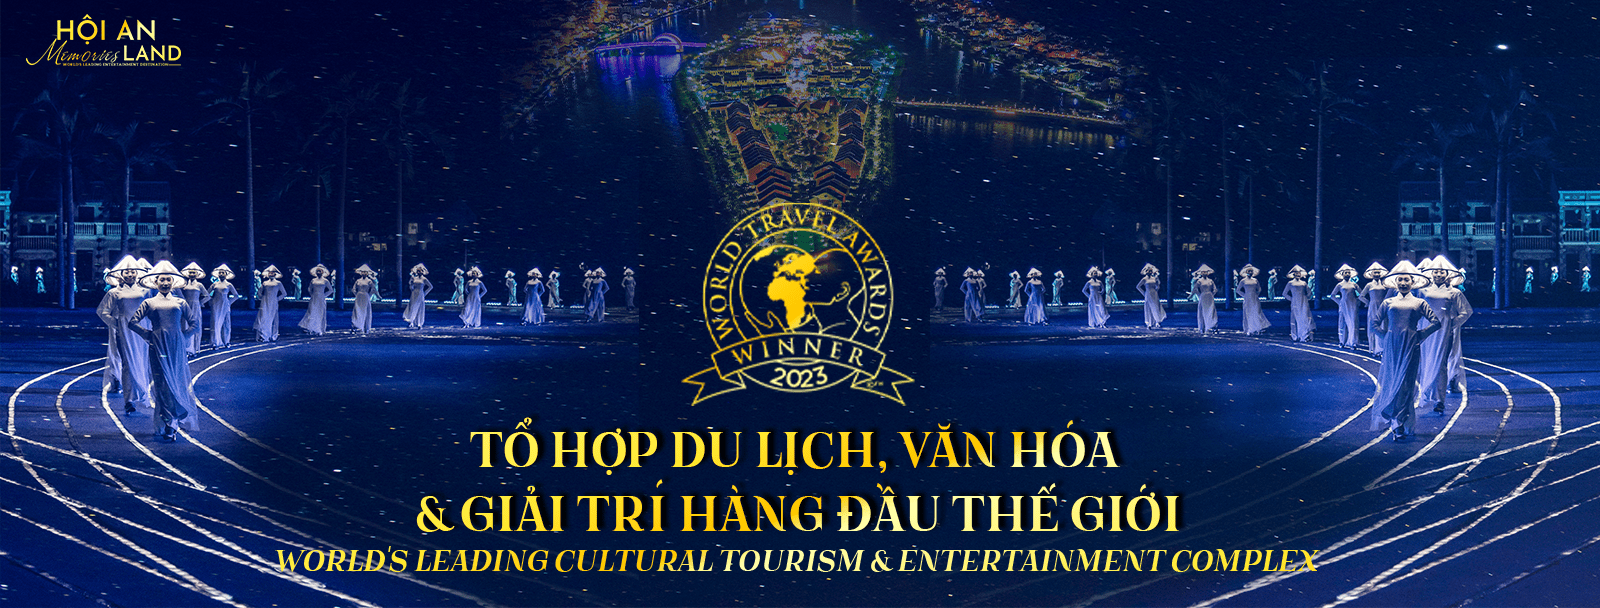 Đảo Ký Ức Hội An được vinh danh là “Tổ hợp du lịch, văn hóa & giải trí hàng đầu thế giới 2023”